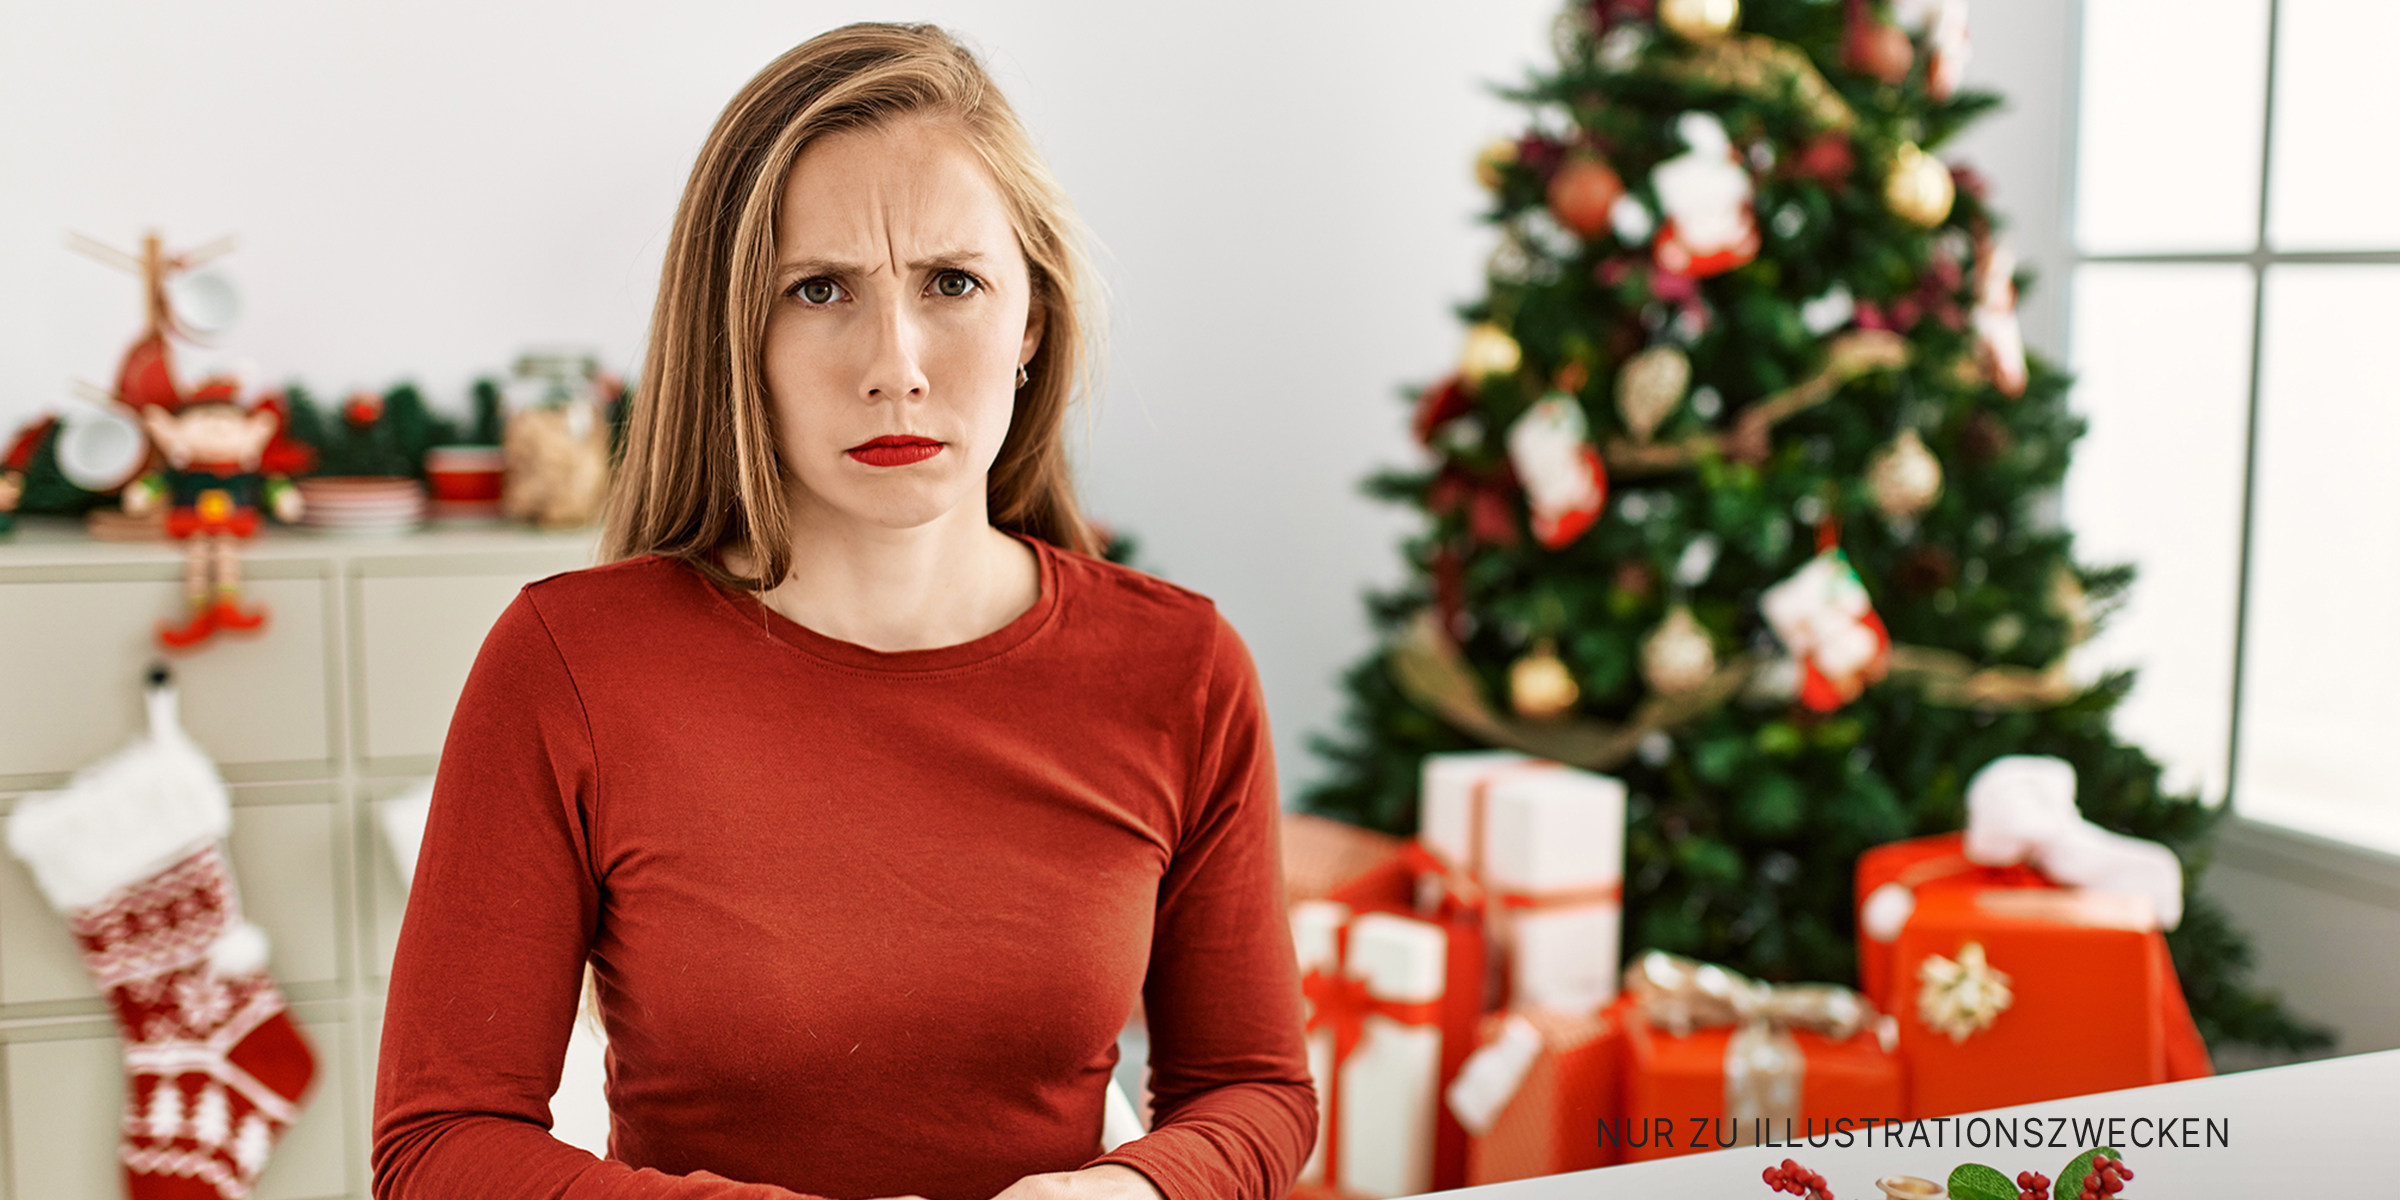 Eine wütende Frau, die vor einem Weihnachtsbaum steht | Quelle: Shutterstock